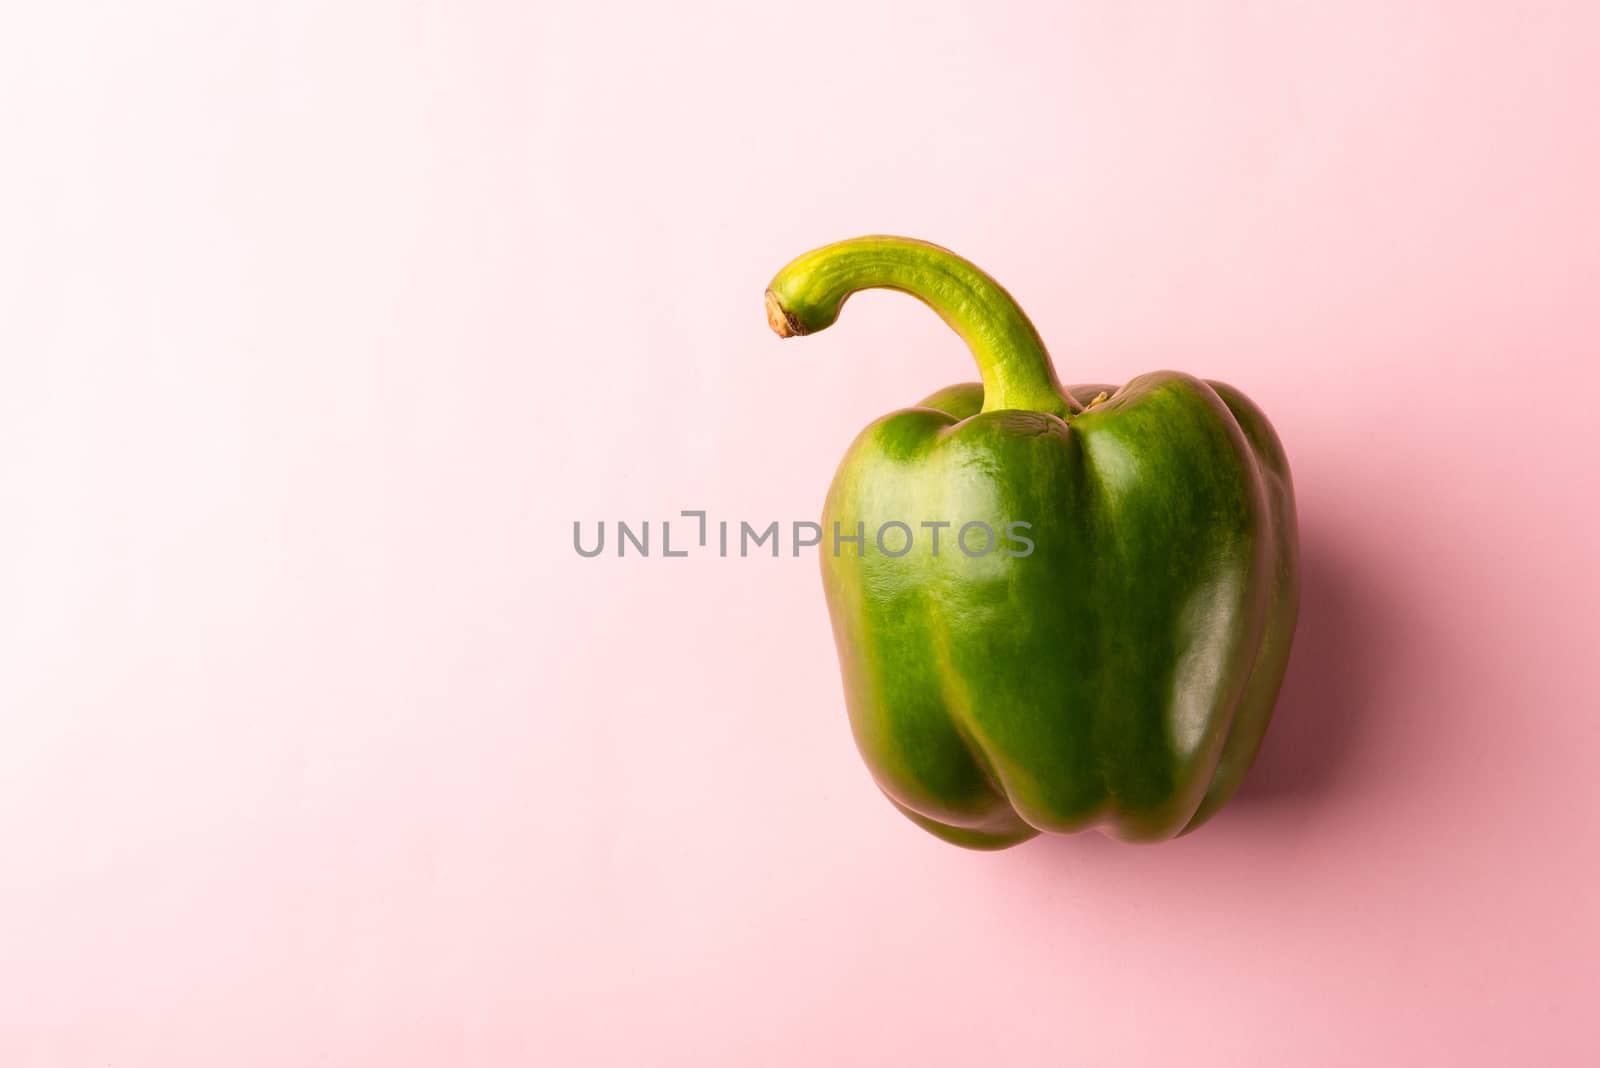 raw green bell peppers by Sorapop